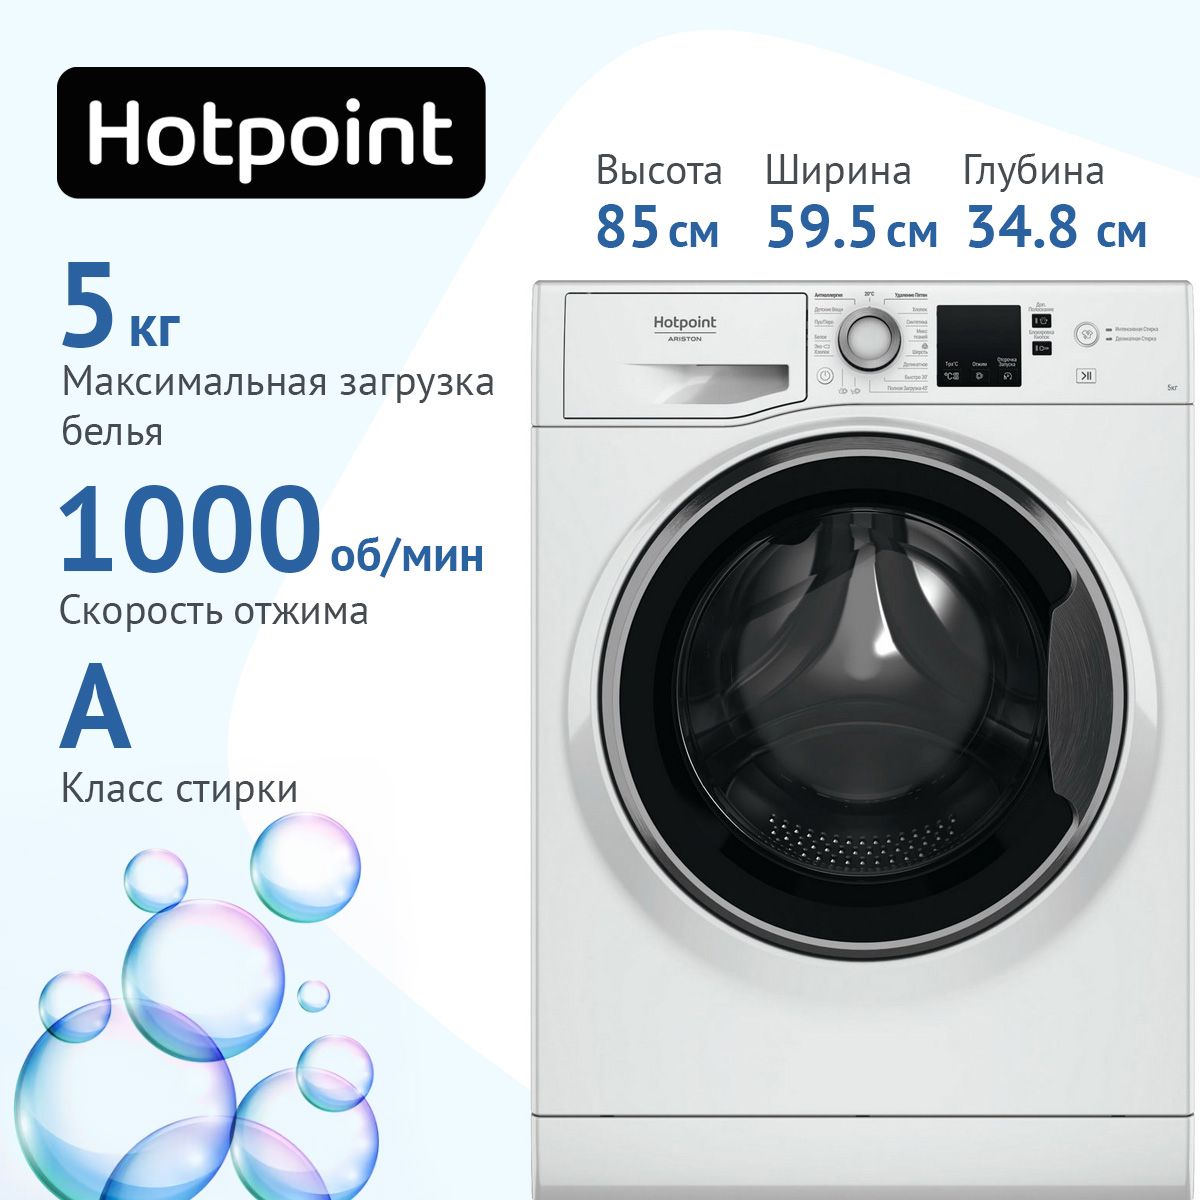 Hotpoint nus 5015 s ru. Hotpoint ariston nus 5015 s